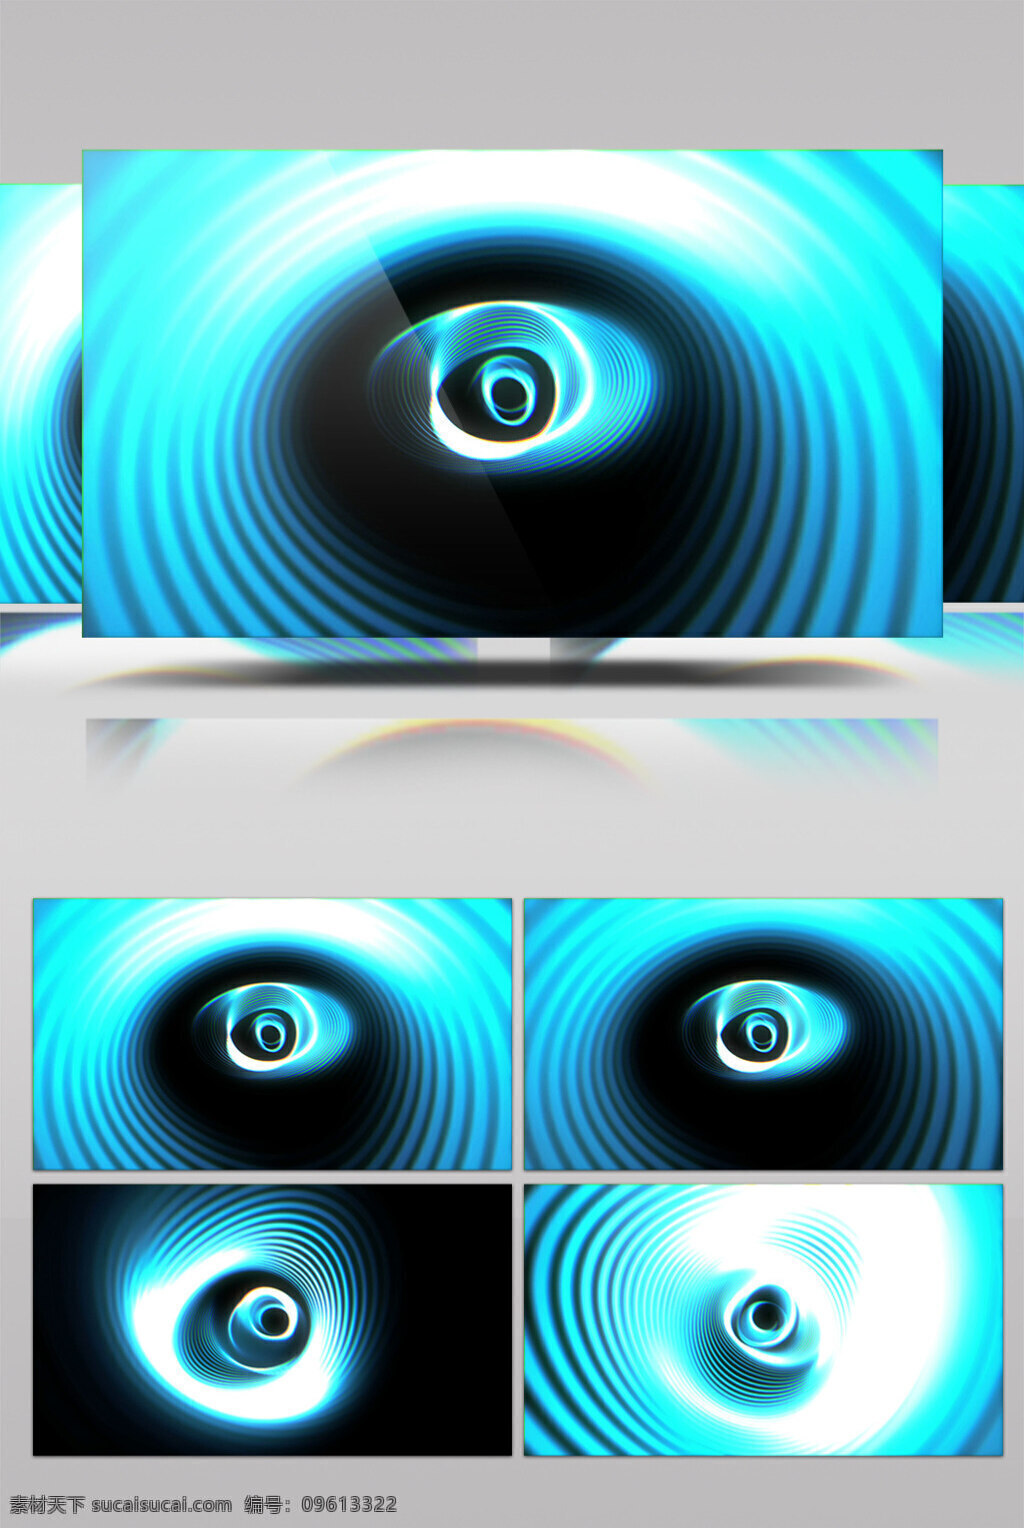 蓝色 旋涡 视频 蓝色旋涡 色彩融合 光丝绸 闪屏画面 光闪闪 3d视频素材 特效视频素材